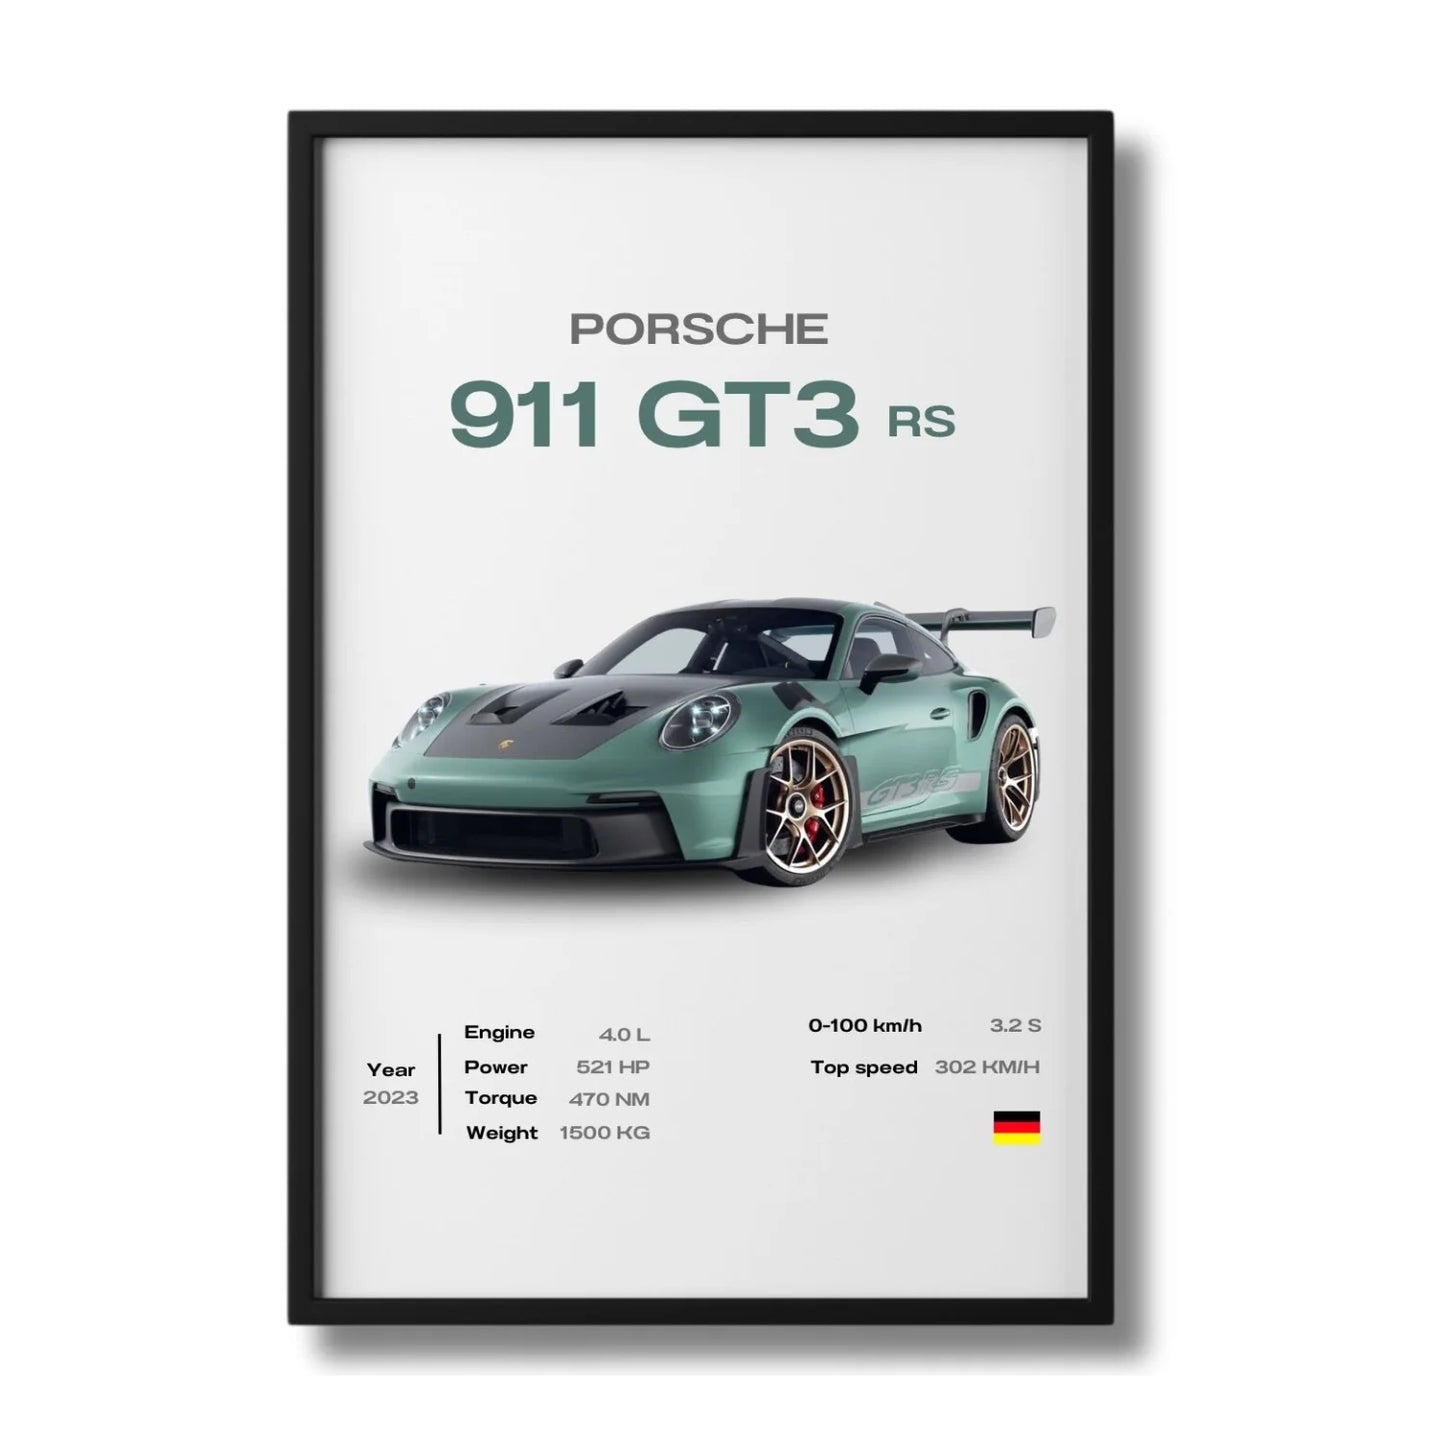 Porsche - 911 Gt3 Rs